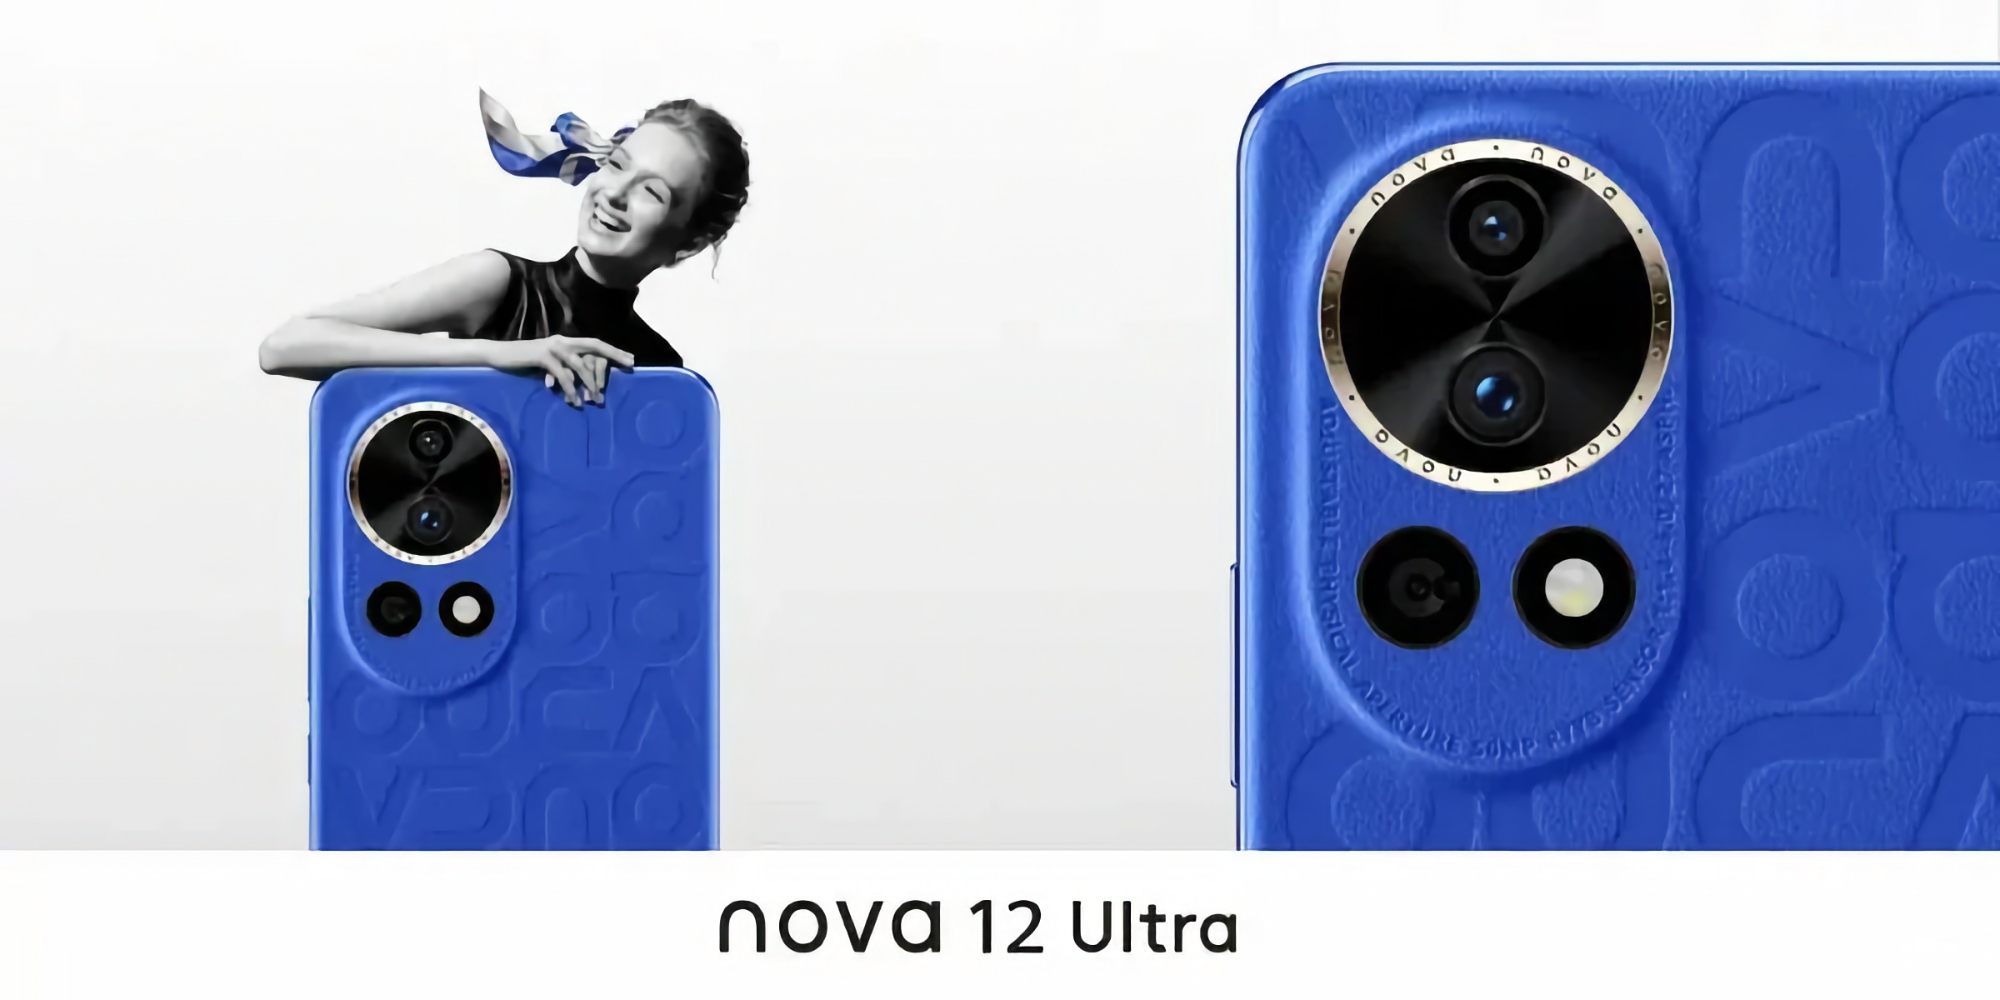 Insider pokazał wygląd Huawei Nova 12 Ultra i podzielił się kilkoma cechami nowości